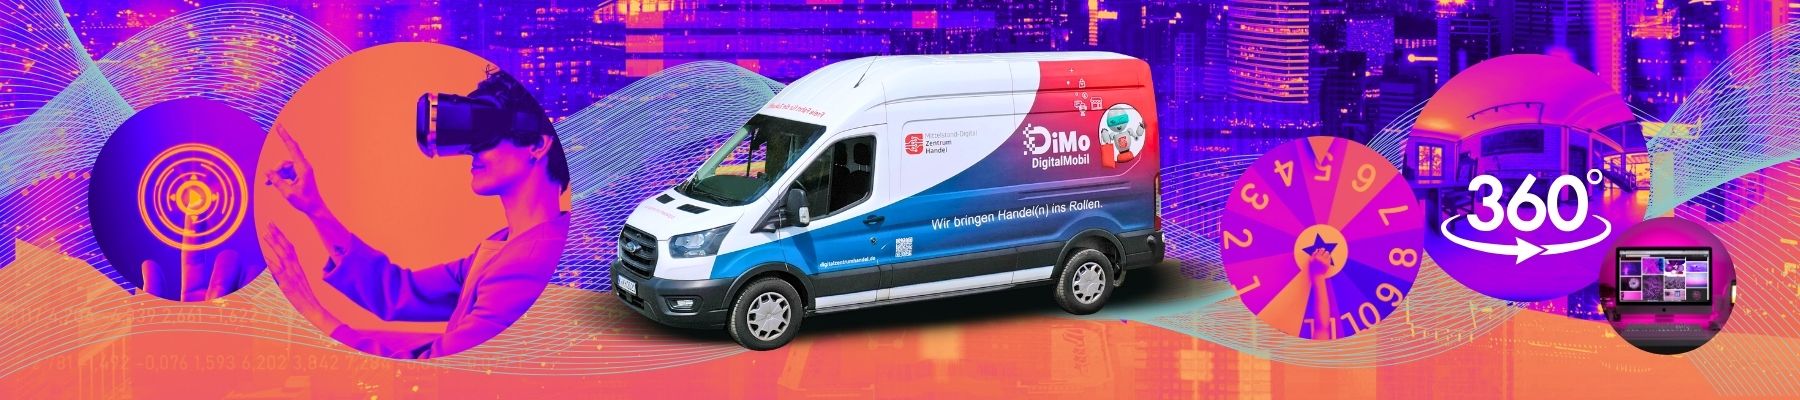 DiMo | DigitalMobil Handel | Mittelstand-Digital Zentrum Handel